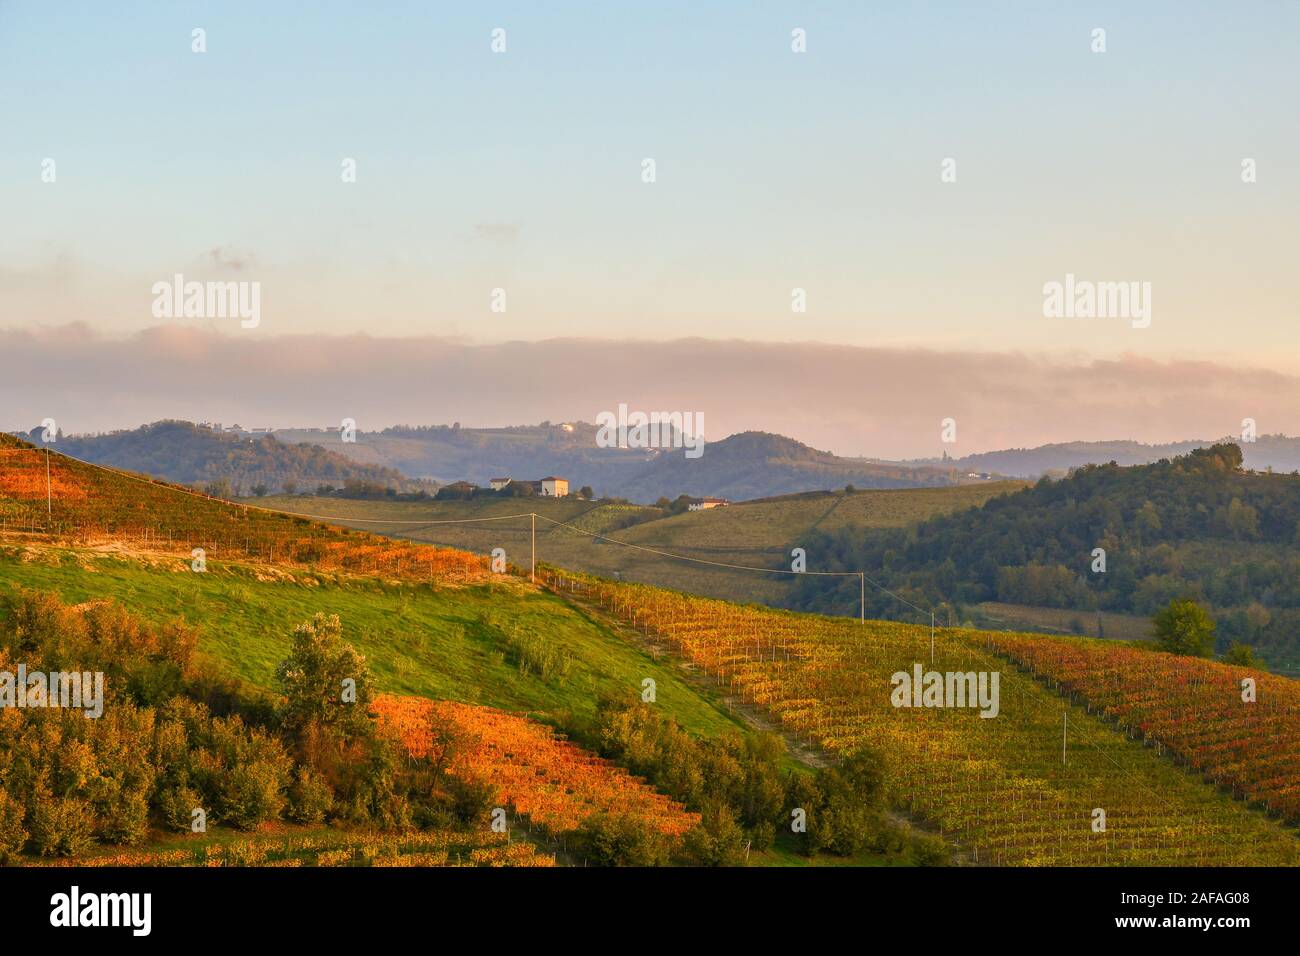 Elevata, vista panoramica delle Langhe vigna colline al tramonto in autunno, Sito Patrimonio Mondiale dell'Unesco, Alba, in provincia di Cuneo, Piemonte, Italia Foto Stock